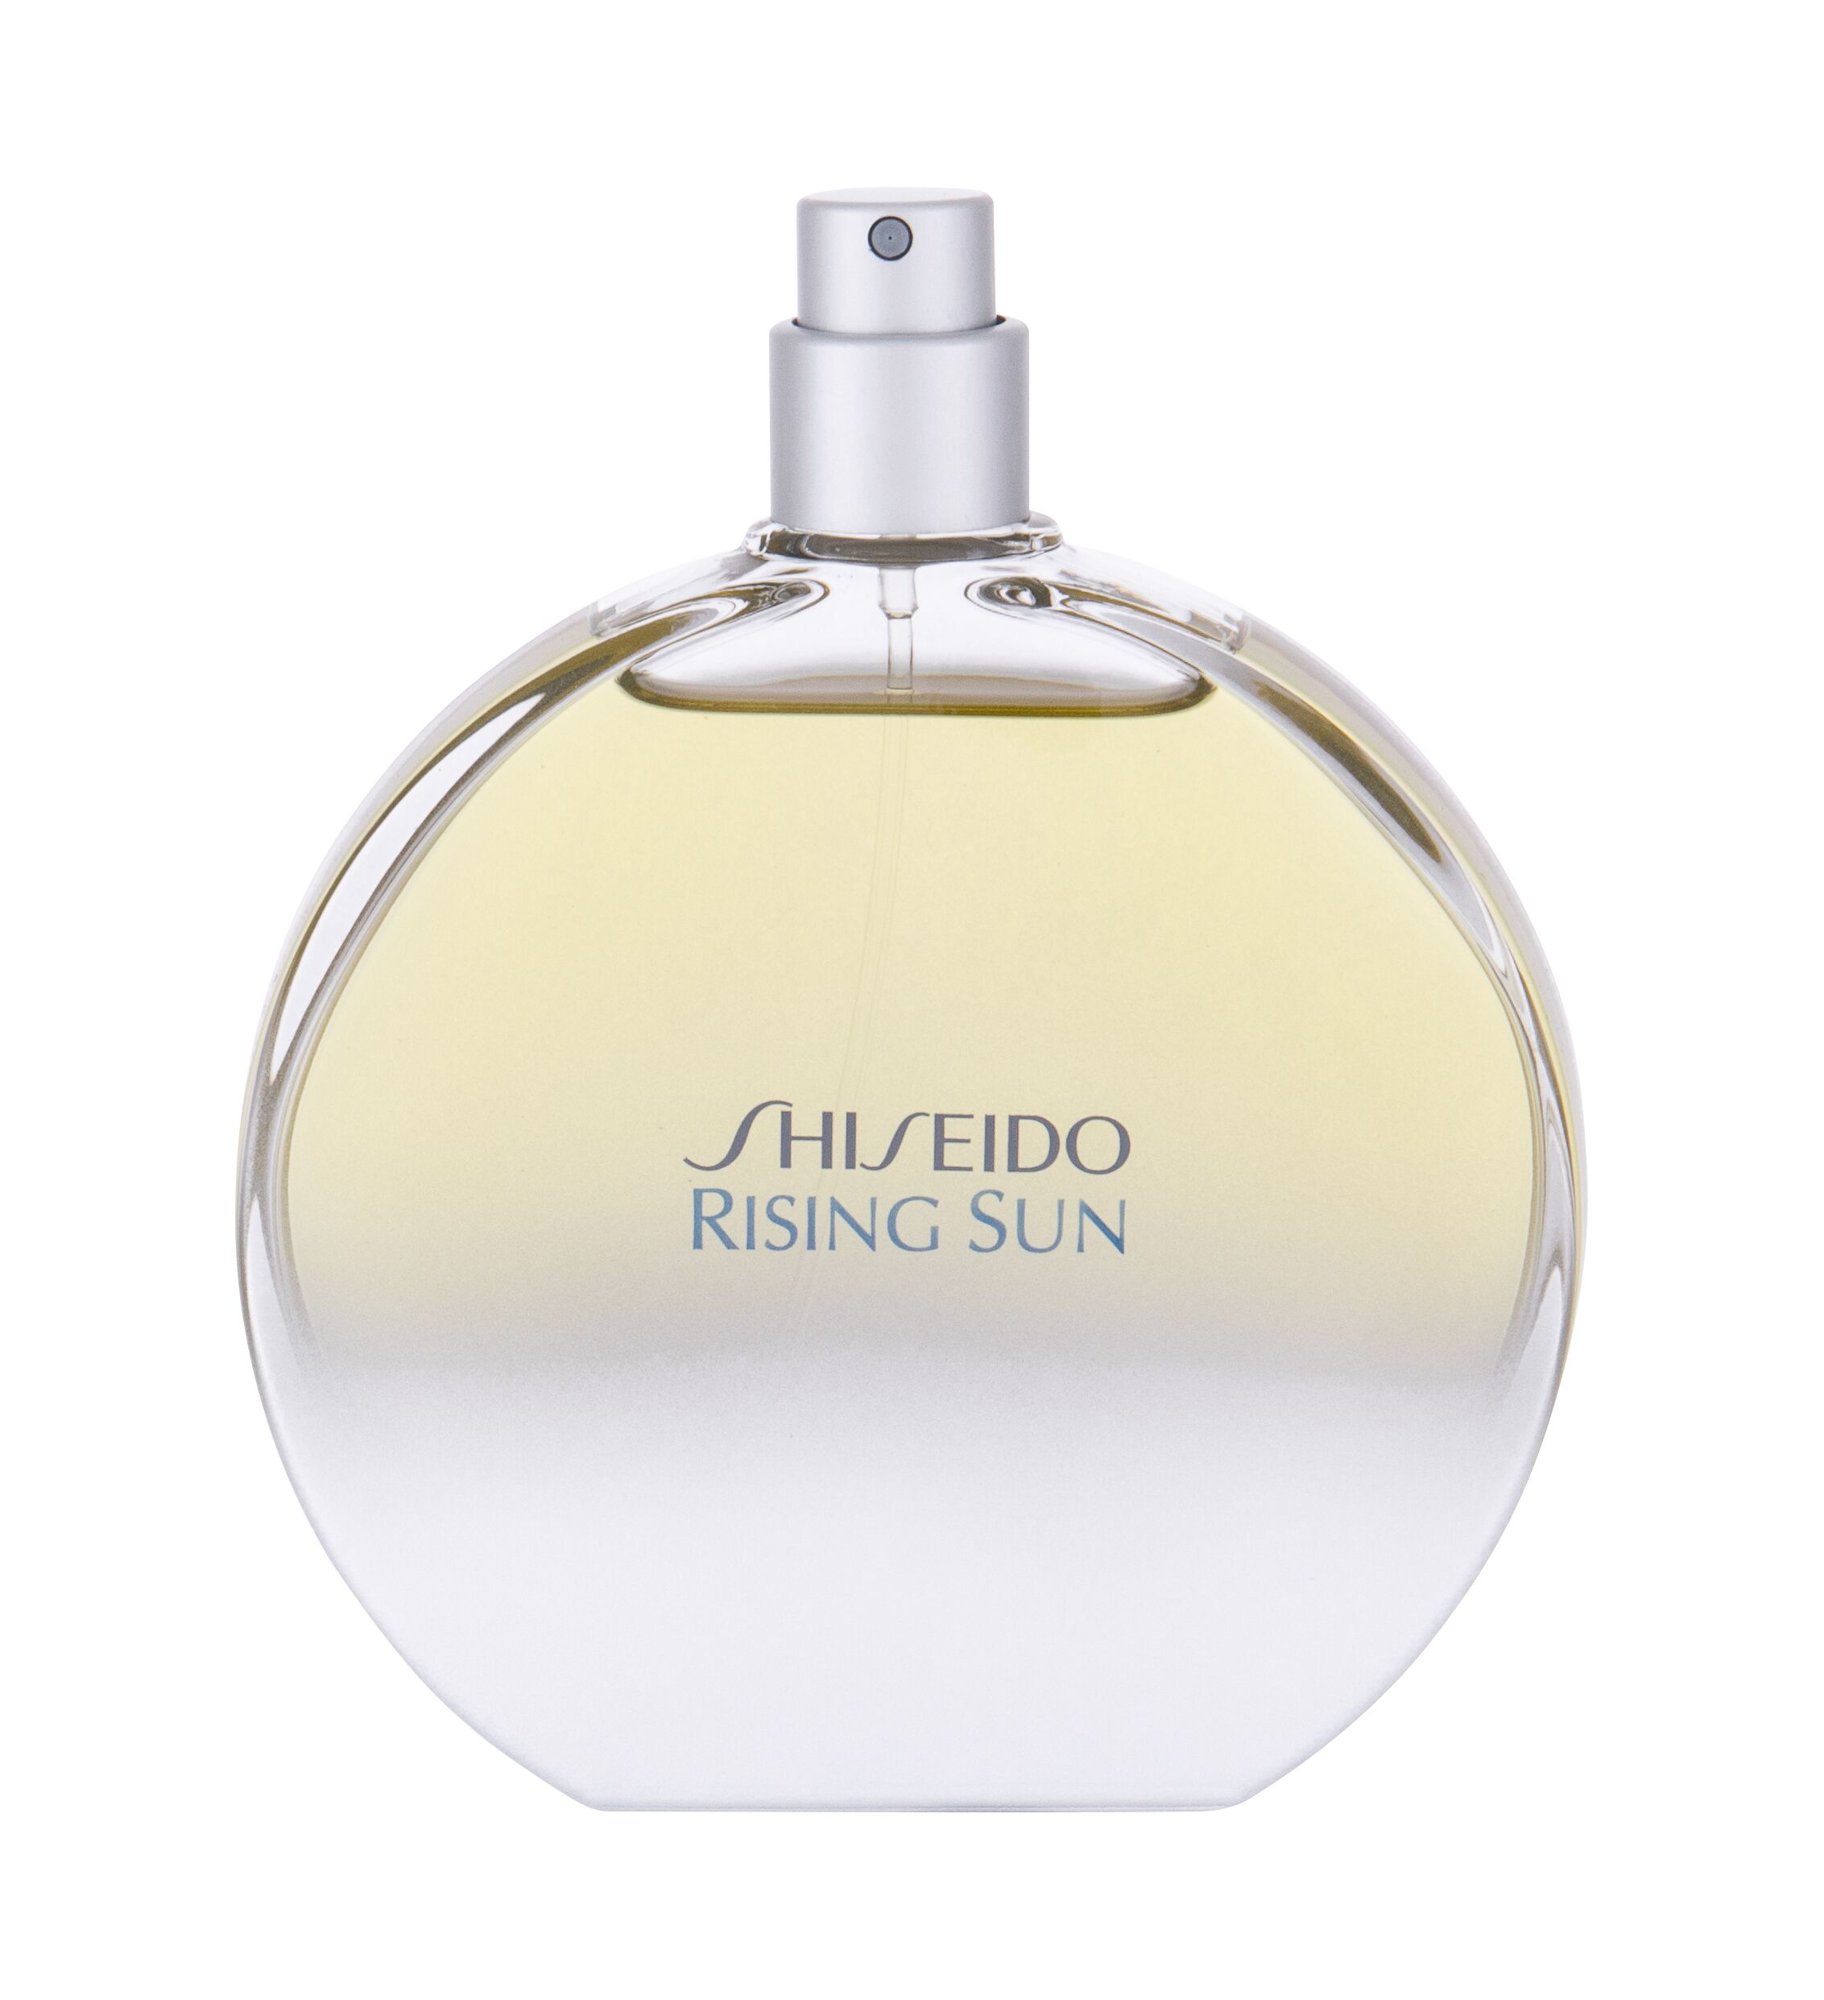 Shiseido Rising Sun, Toaletná voda 100ml, Tester